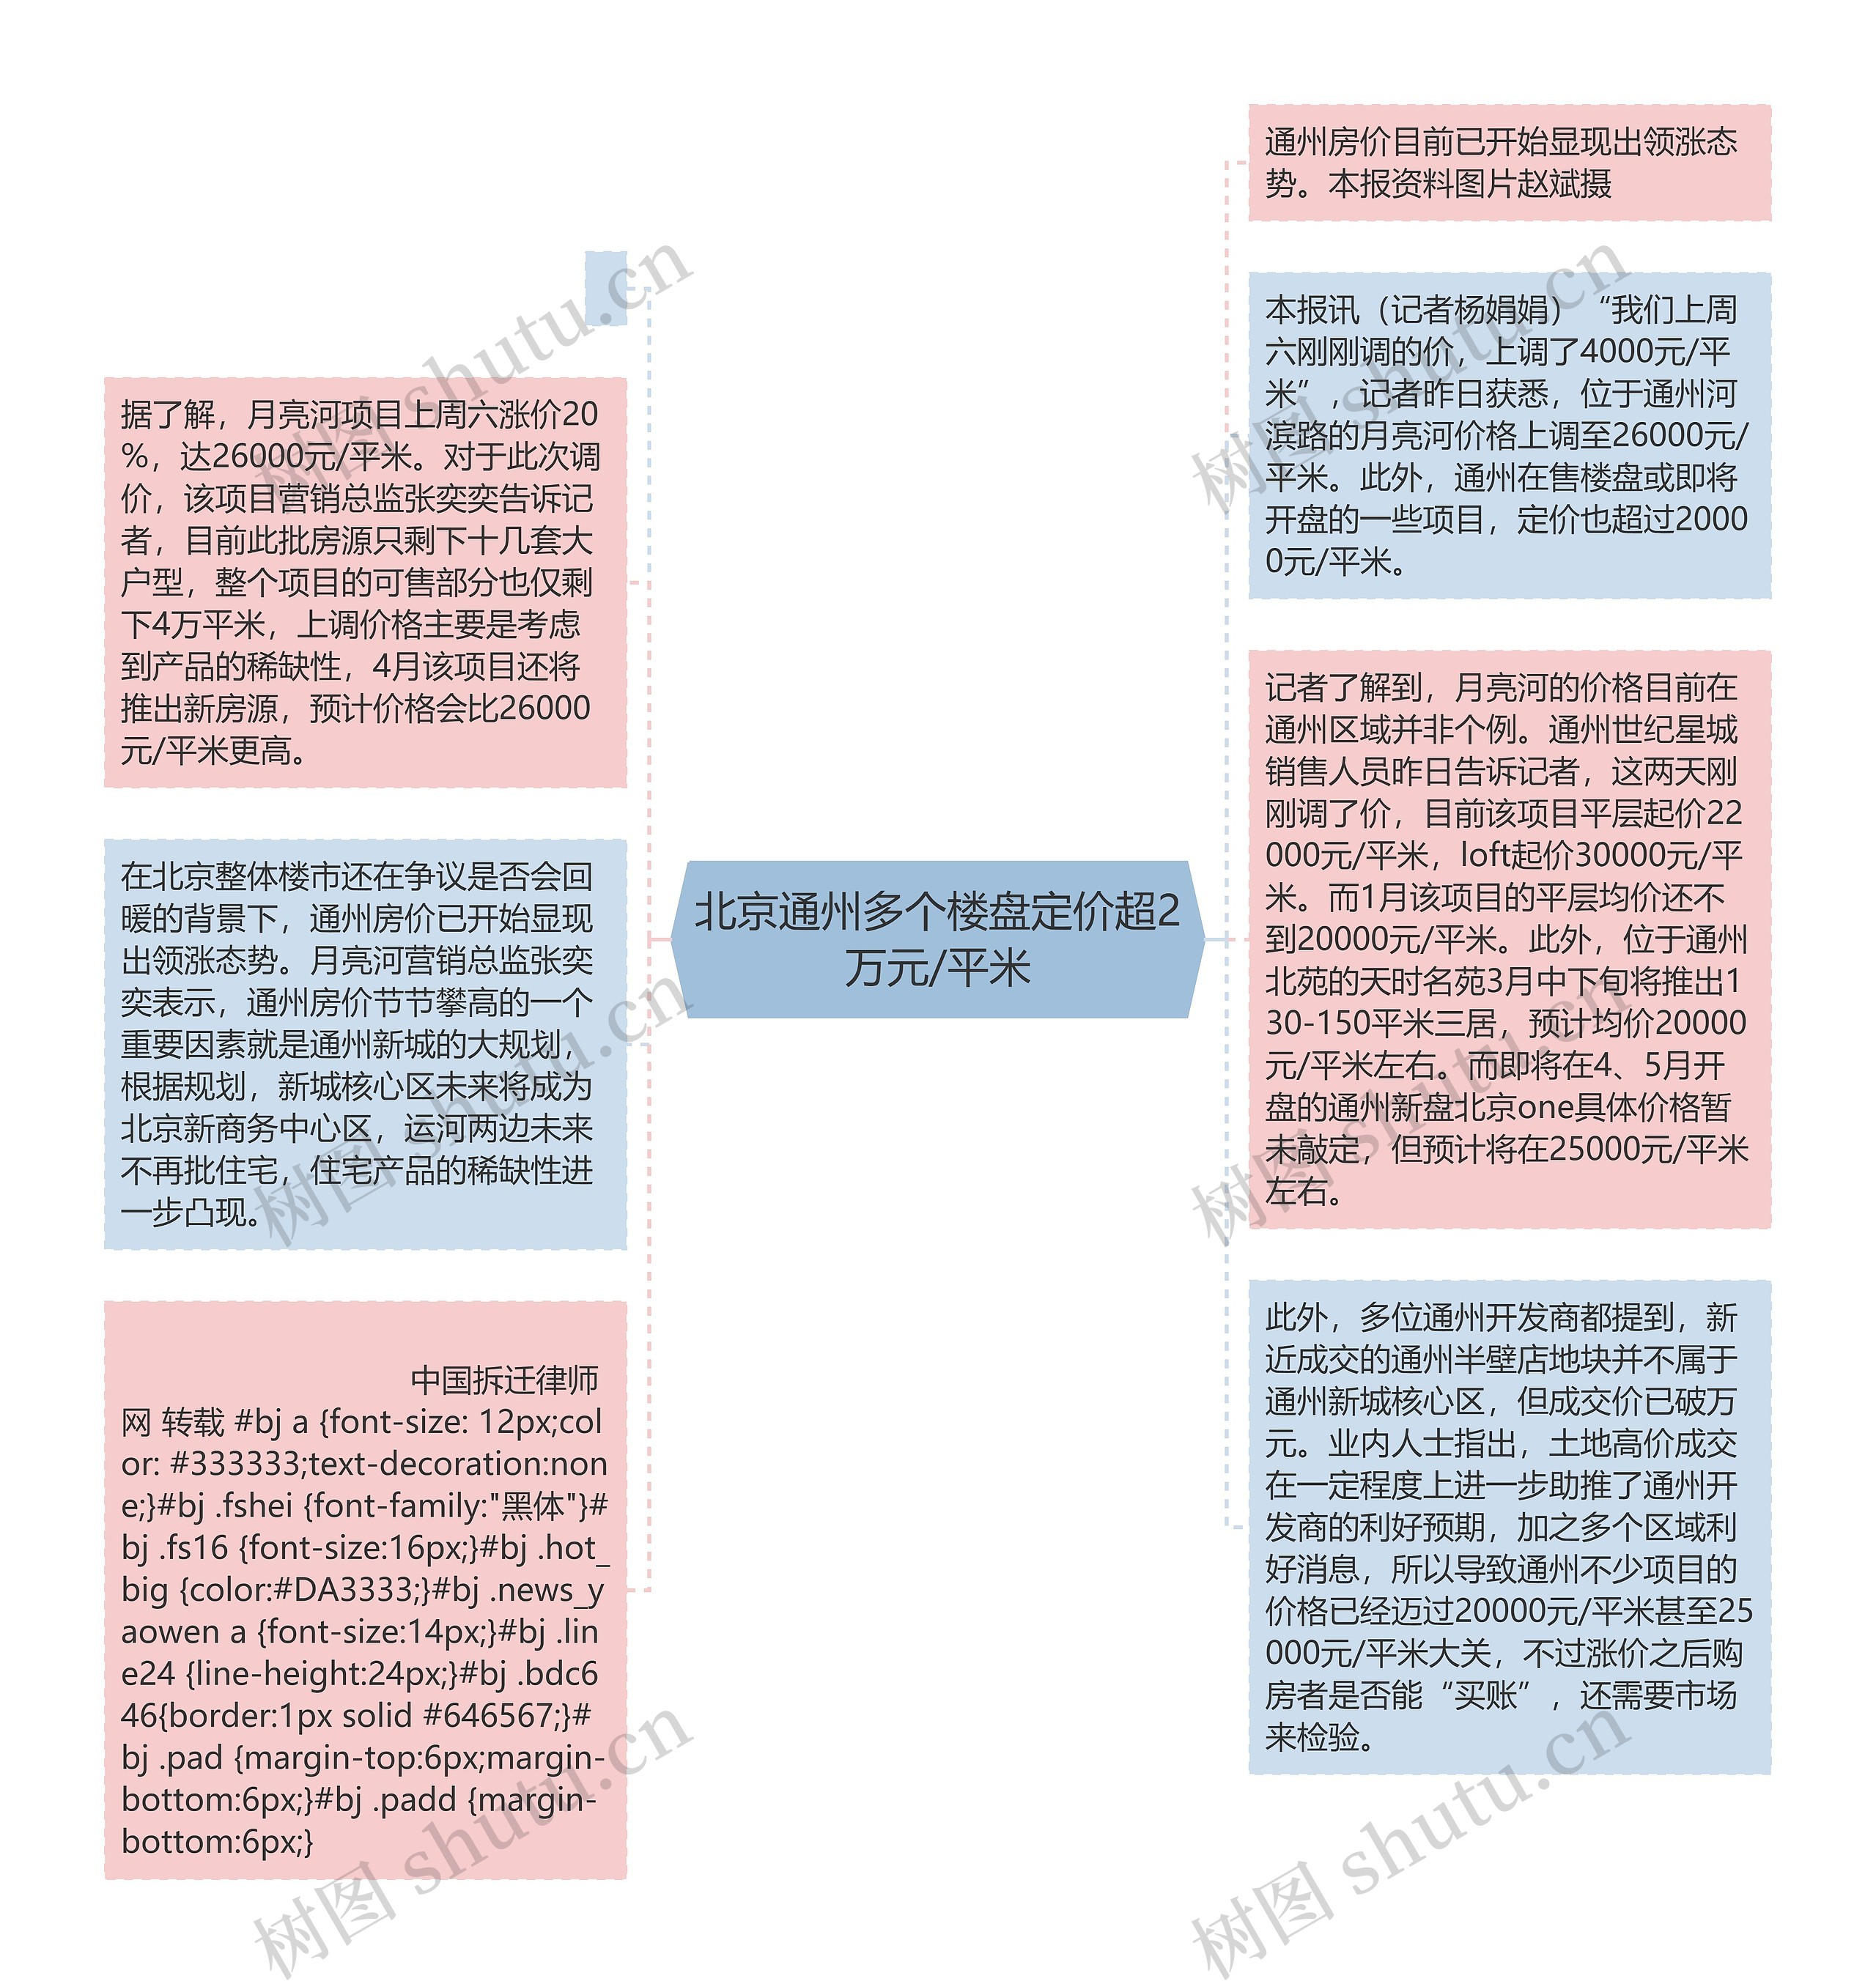 北京通州多个楼盘定价超2万元/平米思维导图